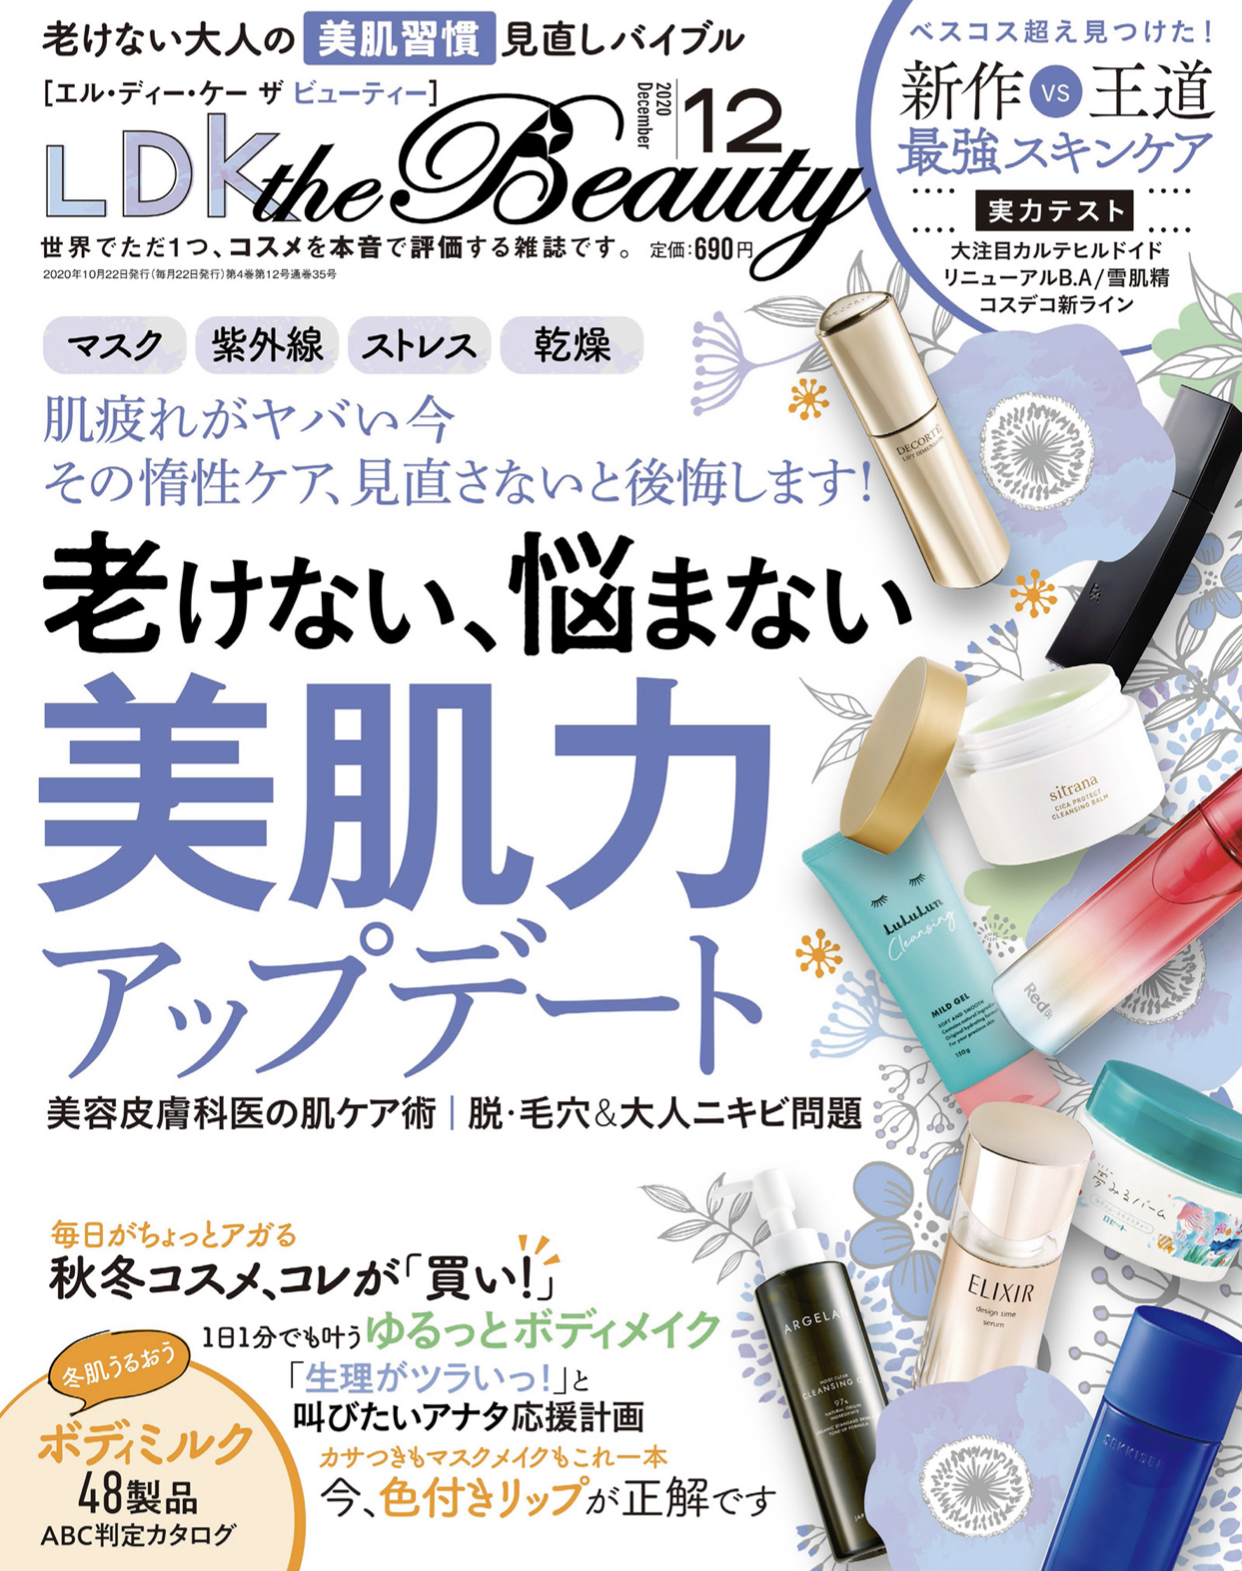 掲載情報 Ldk The Beauty 年12月号に掲載されました Kougeisha Co Ltd コウゲイシャ株式会社